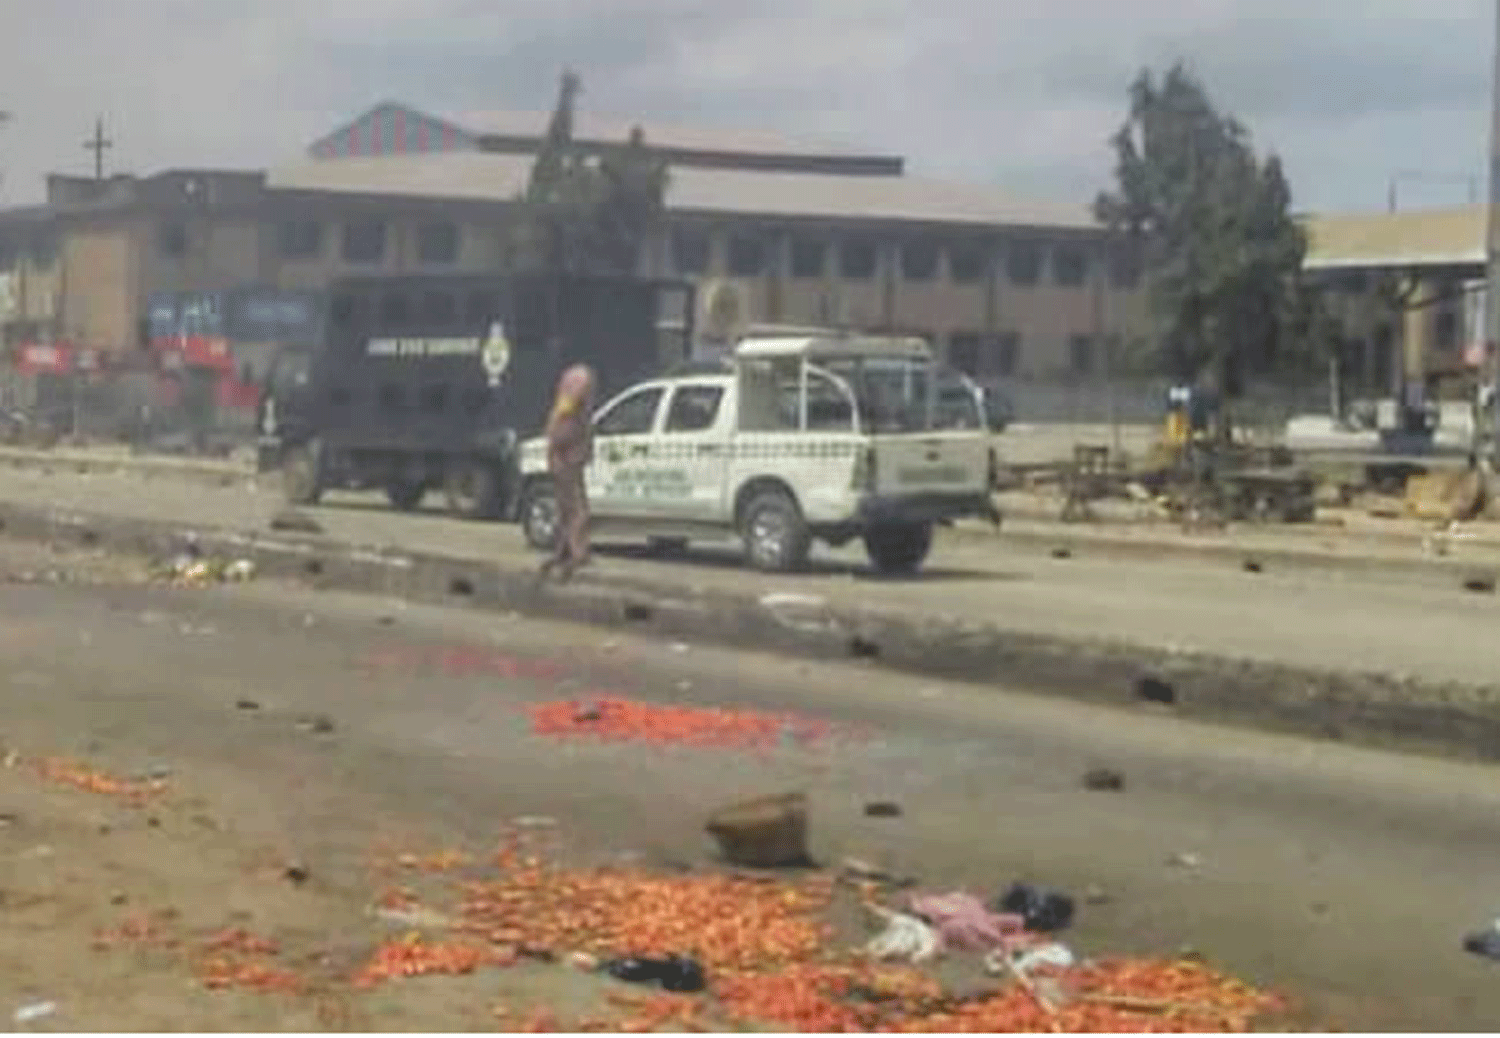 Many injured in Hausa/Yoruba clash in Lagos